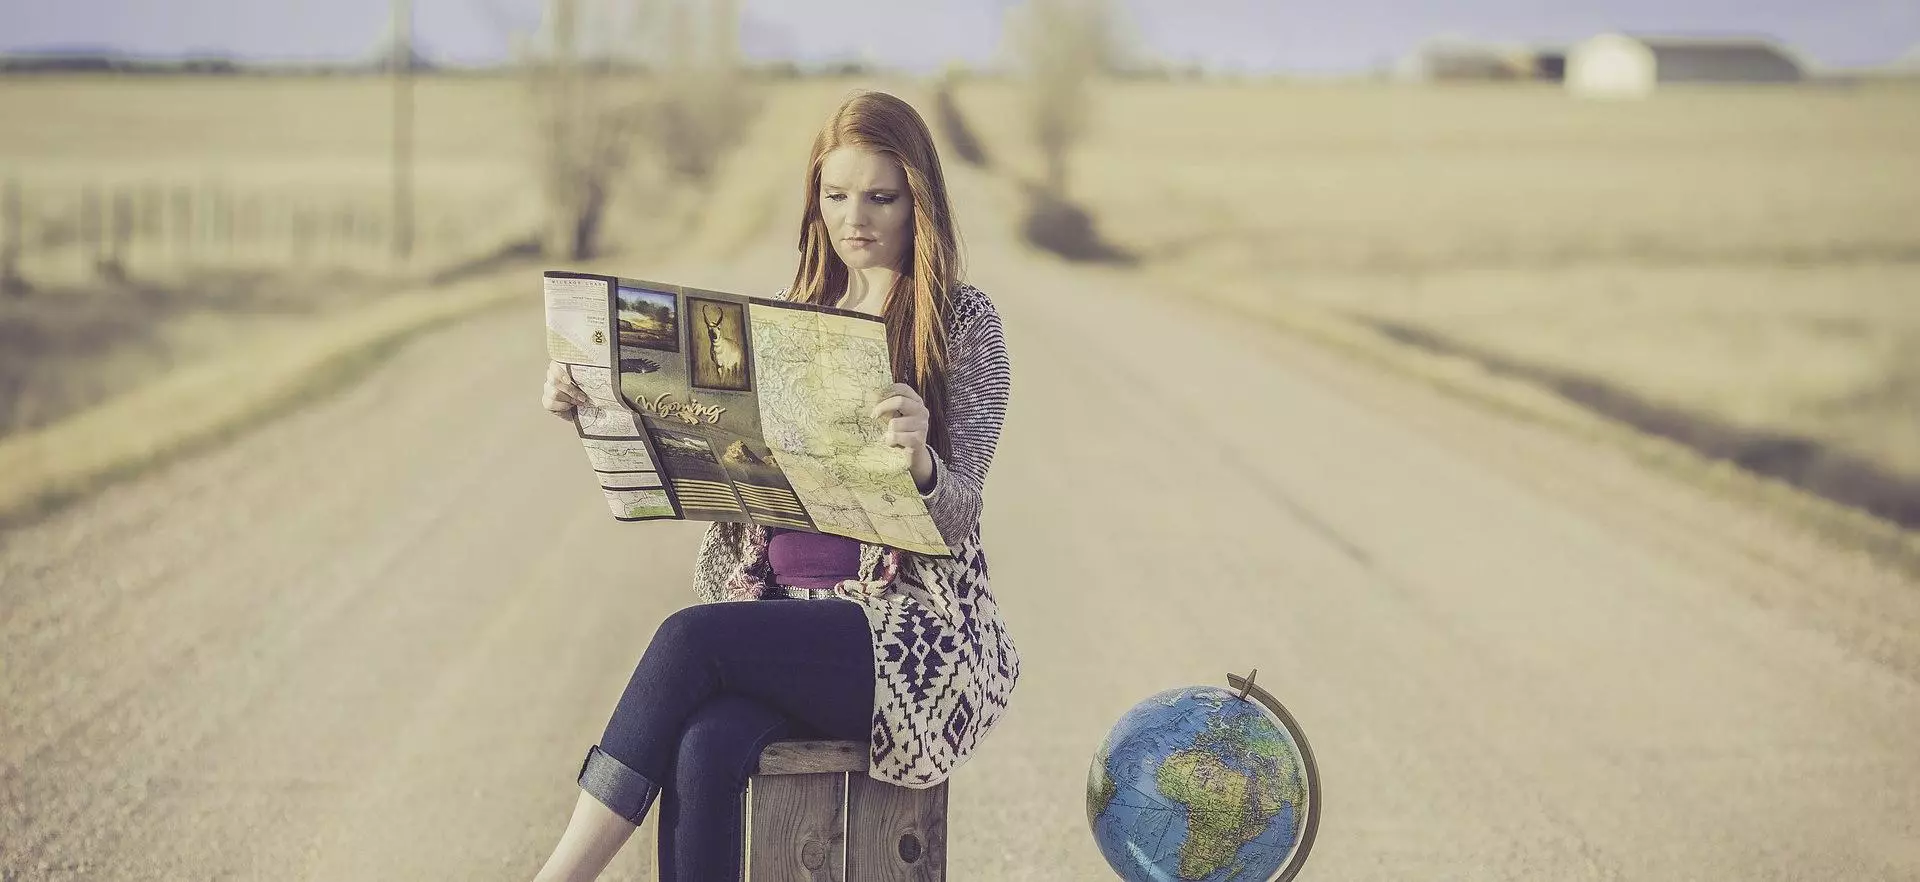 News-femme-lisant-une-carte-sur-la route